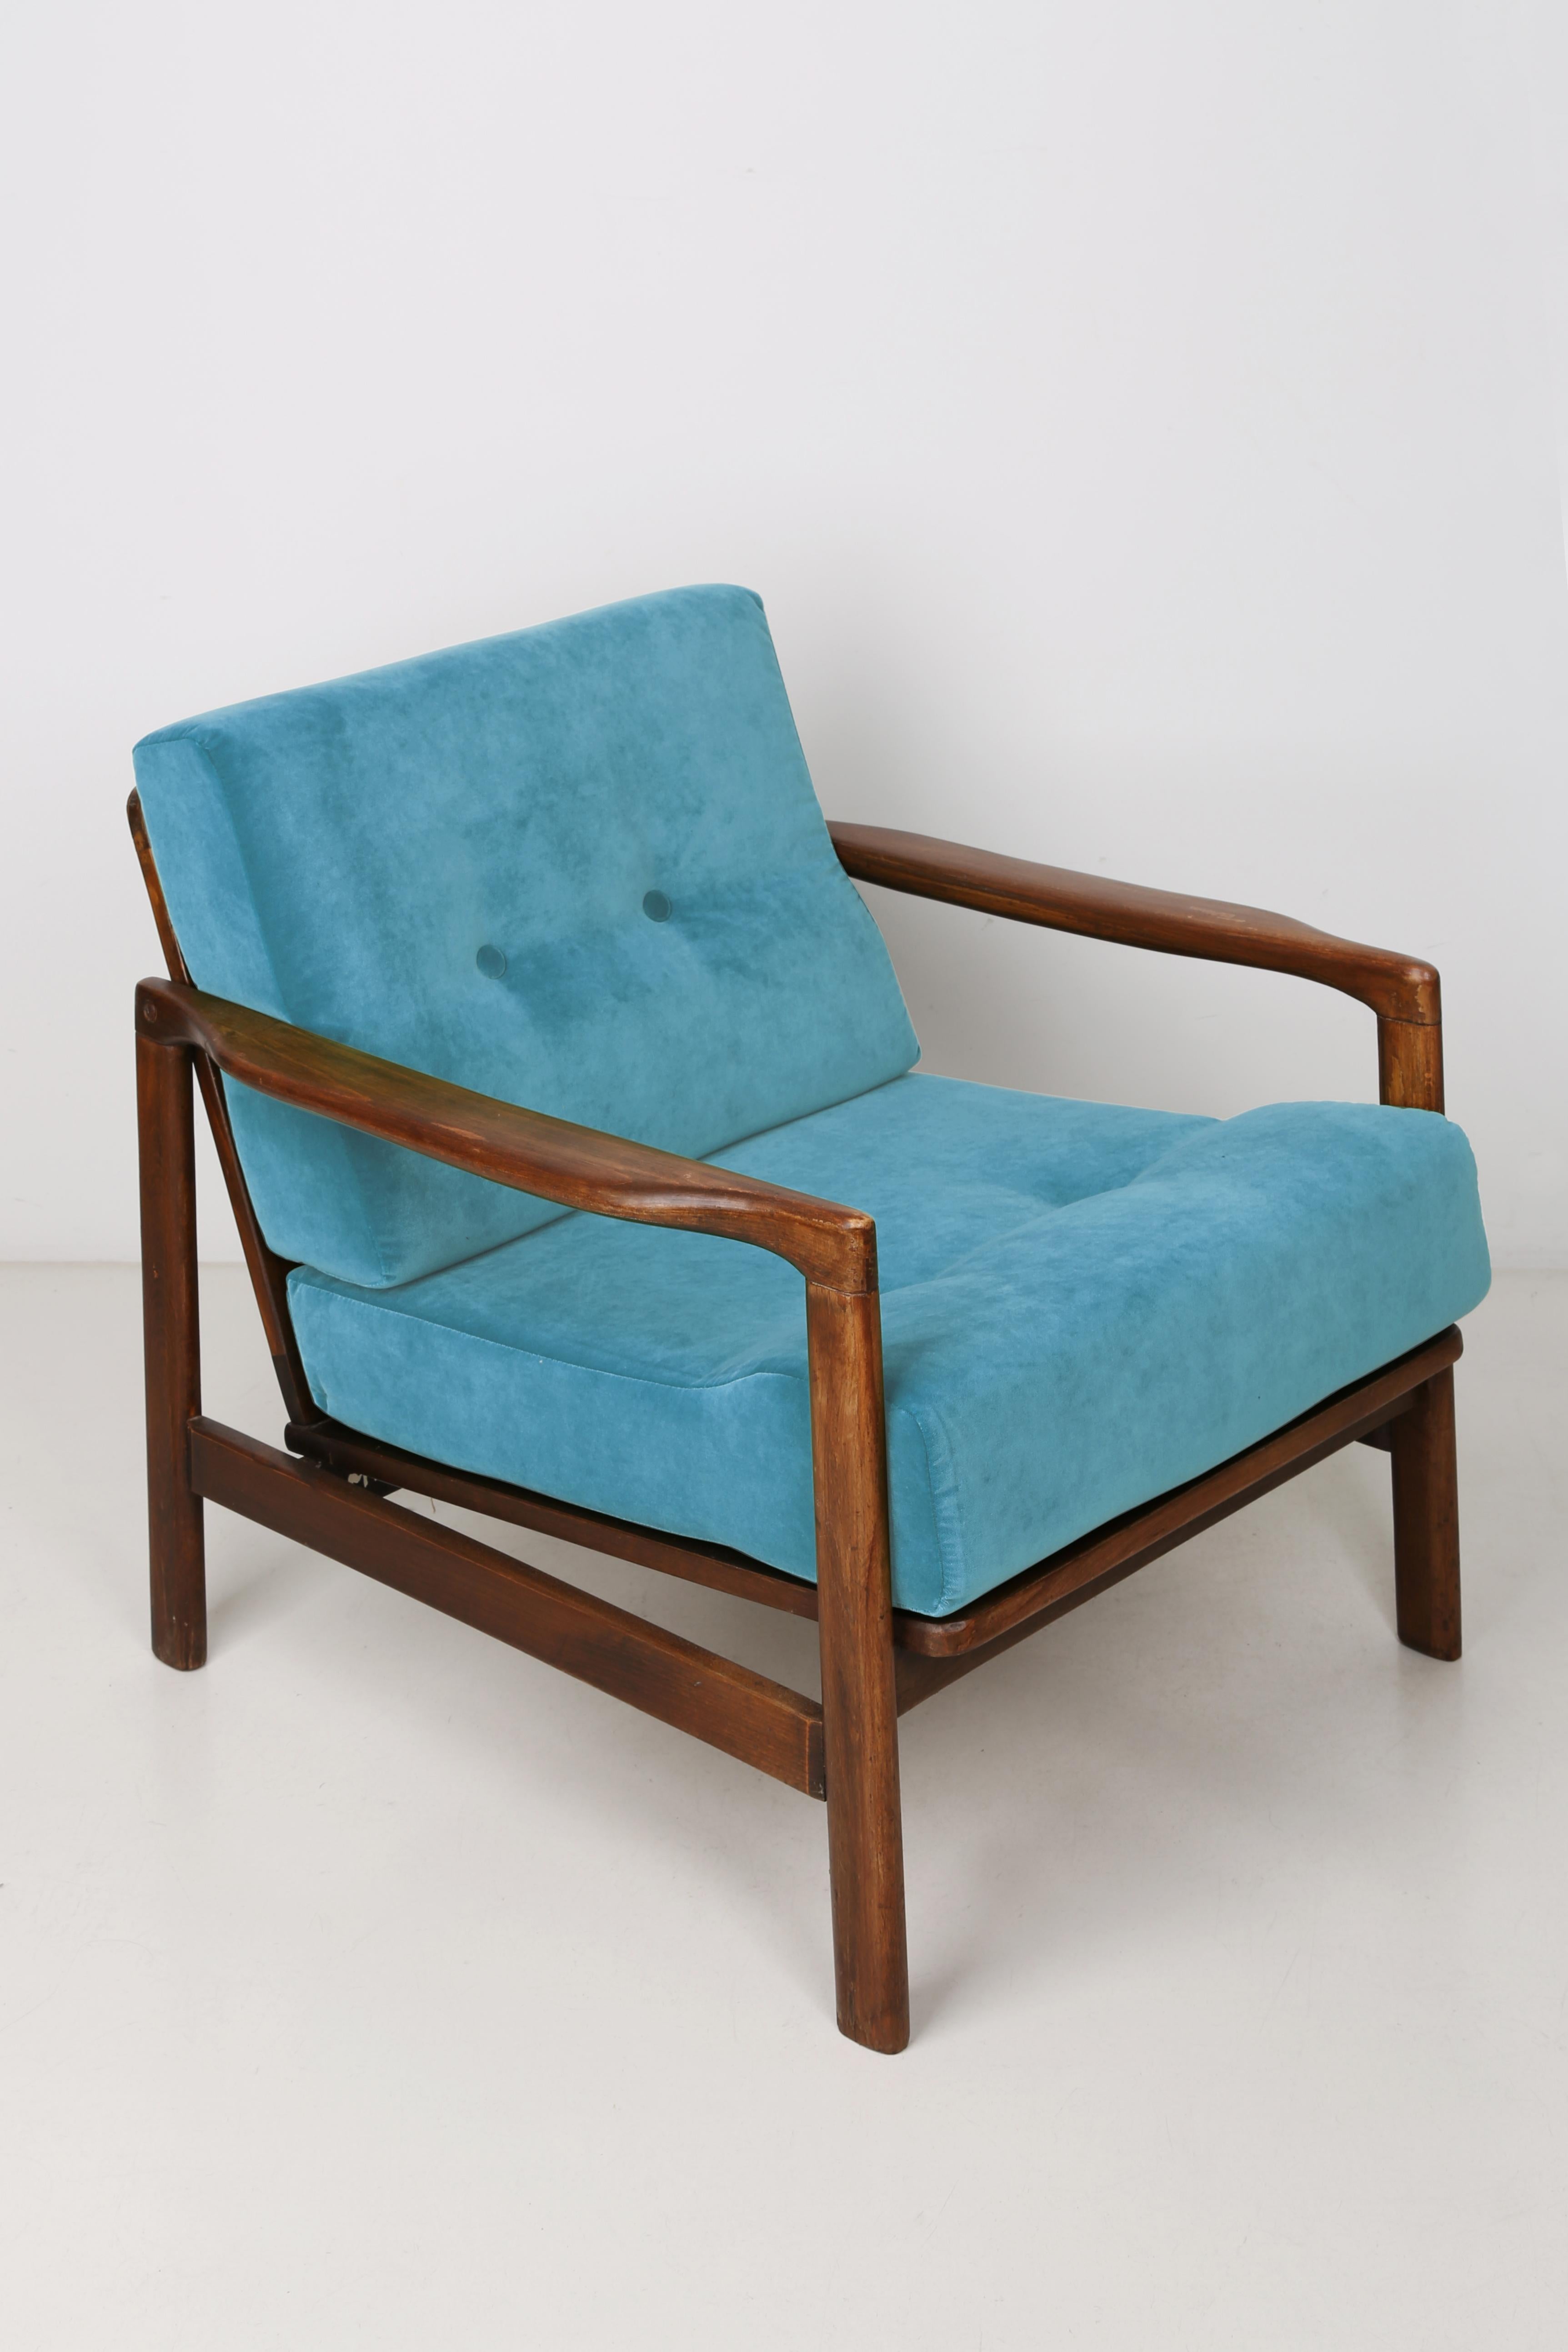 Der Sessel B-7522 wurde in den 1960er Jahren von Zenon Baczyk entworfen und von den Swarzedz-Möbelfabriken in Polen hergestellt. Möbel in perfektem Zustand gehalten, nach voller Polsterung und Holz. Stabiler und sehr bequemer Sessel aus hochwertigem